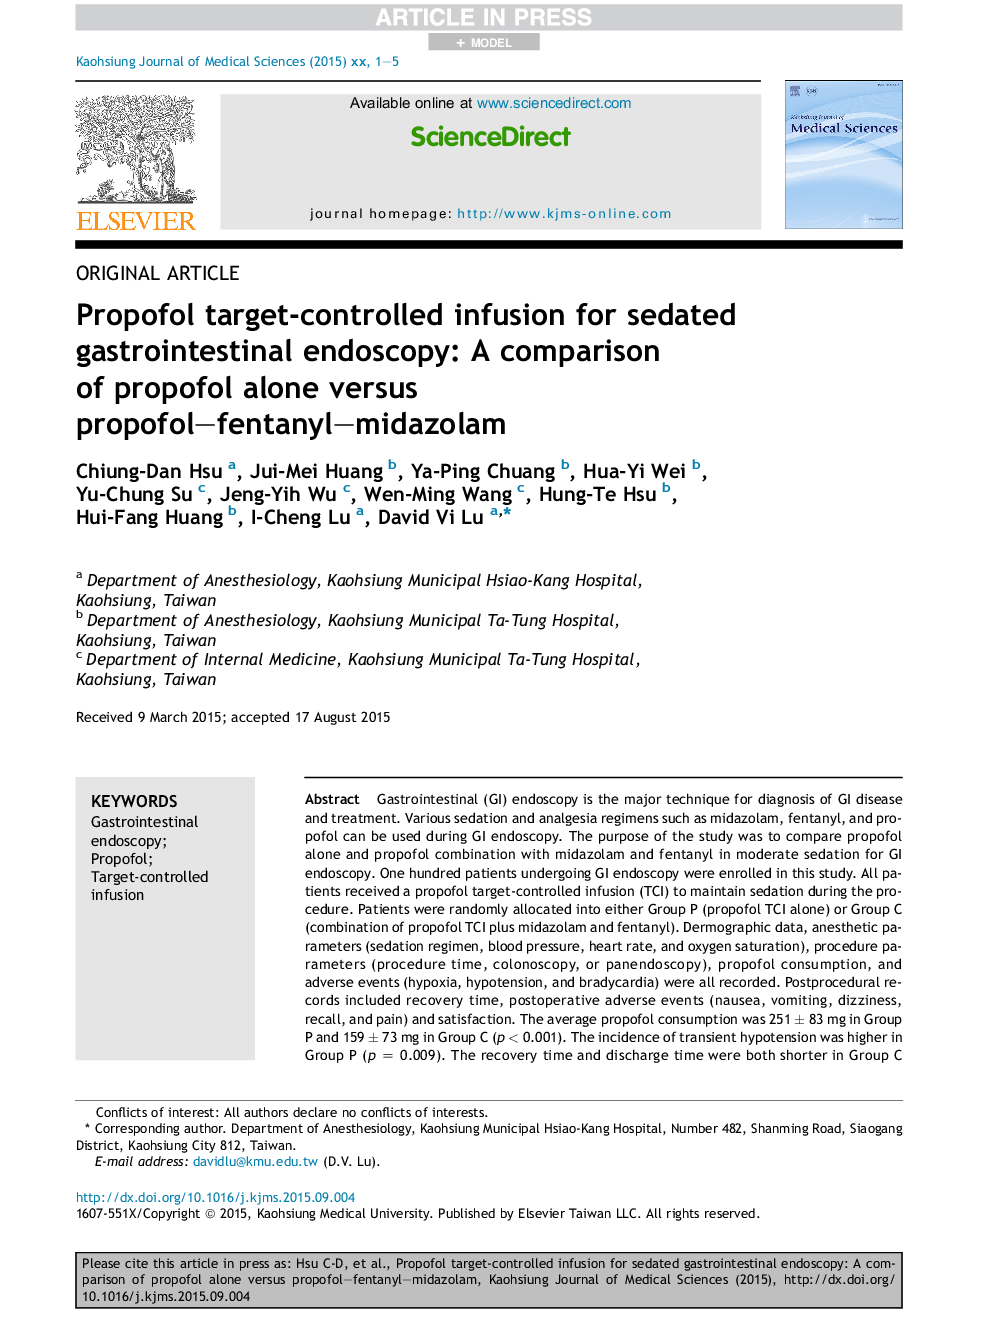 انفوزیون پروپوفول هدف برای اندوسکوپی دستگاه گوارش مضر: مقایسه پروپوفول به تنهایی در مقابل پروپوفول-فنتانیل-میدازولام 